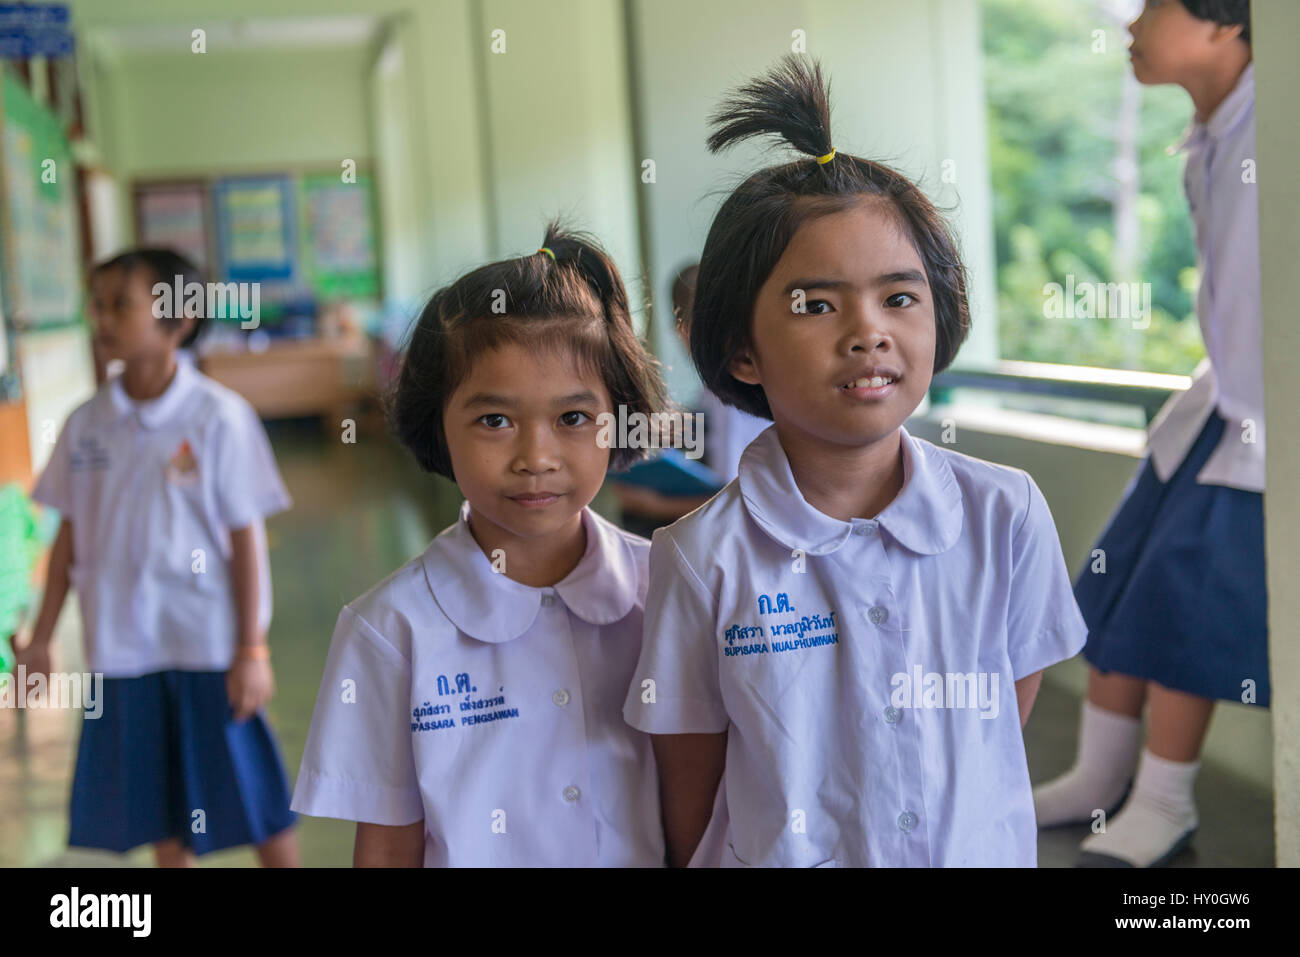 Deux étudiants jolie fille nommée Fasai (à gauche) et Youmi dans une école primaire de Phuket, Thailande. 10 =mar-2017 Banque D'Images